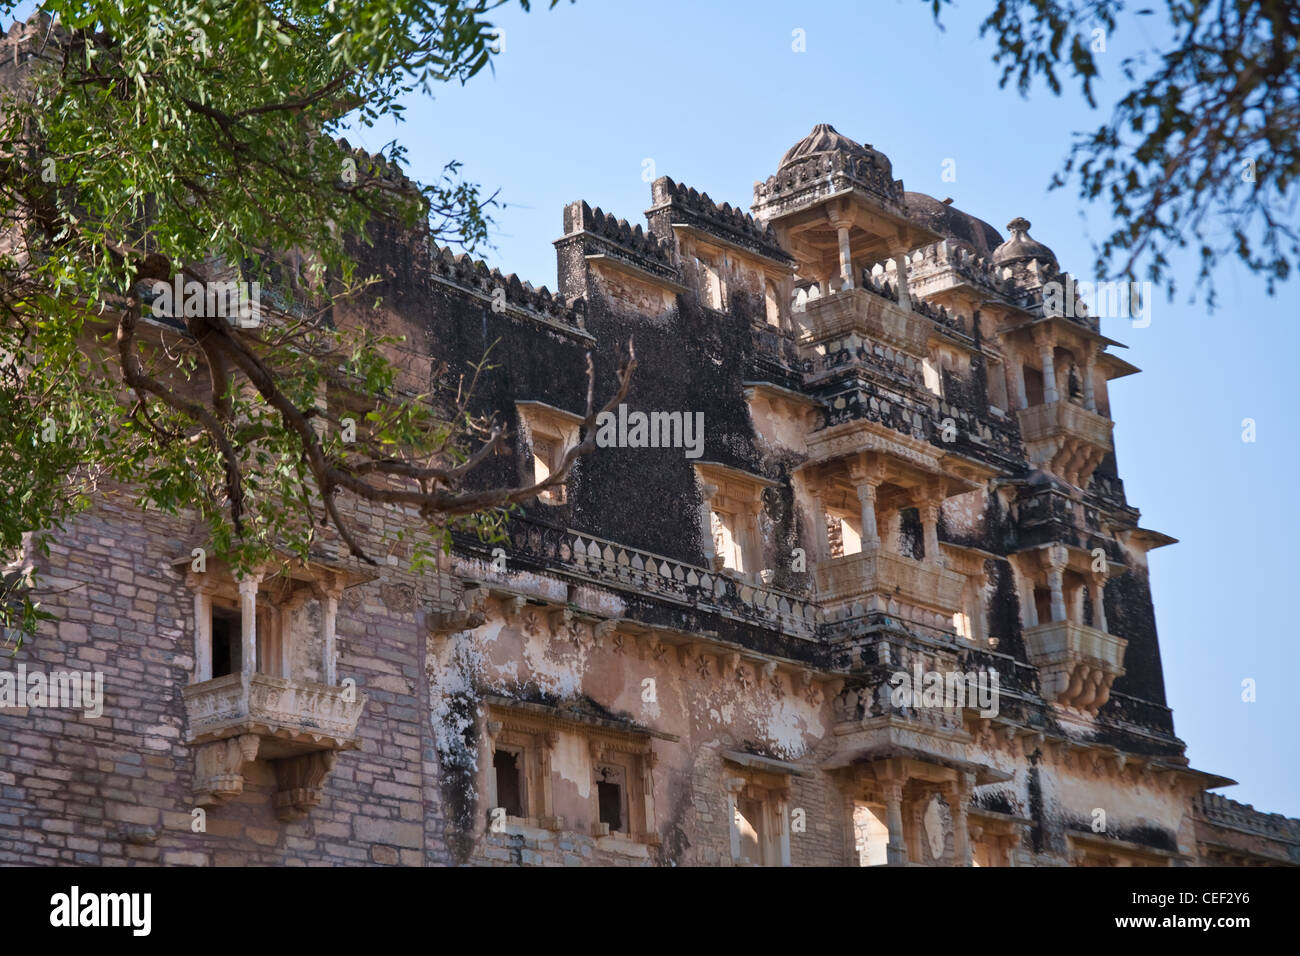 Chittorgarh Fort, Rajasthan, India Stock Photo